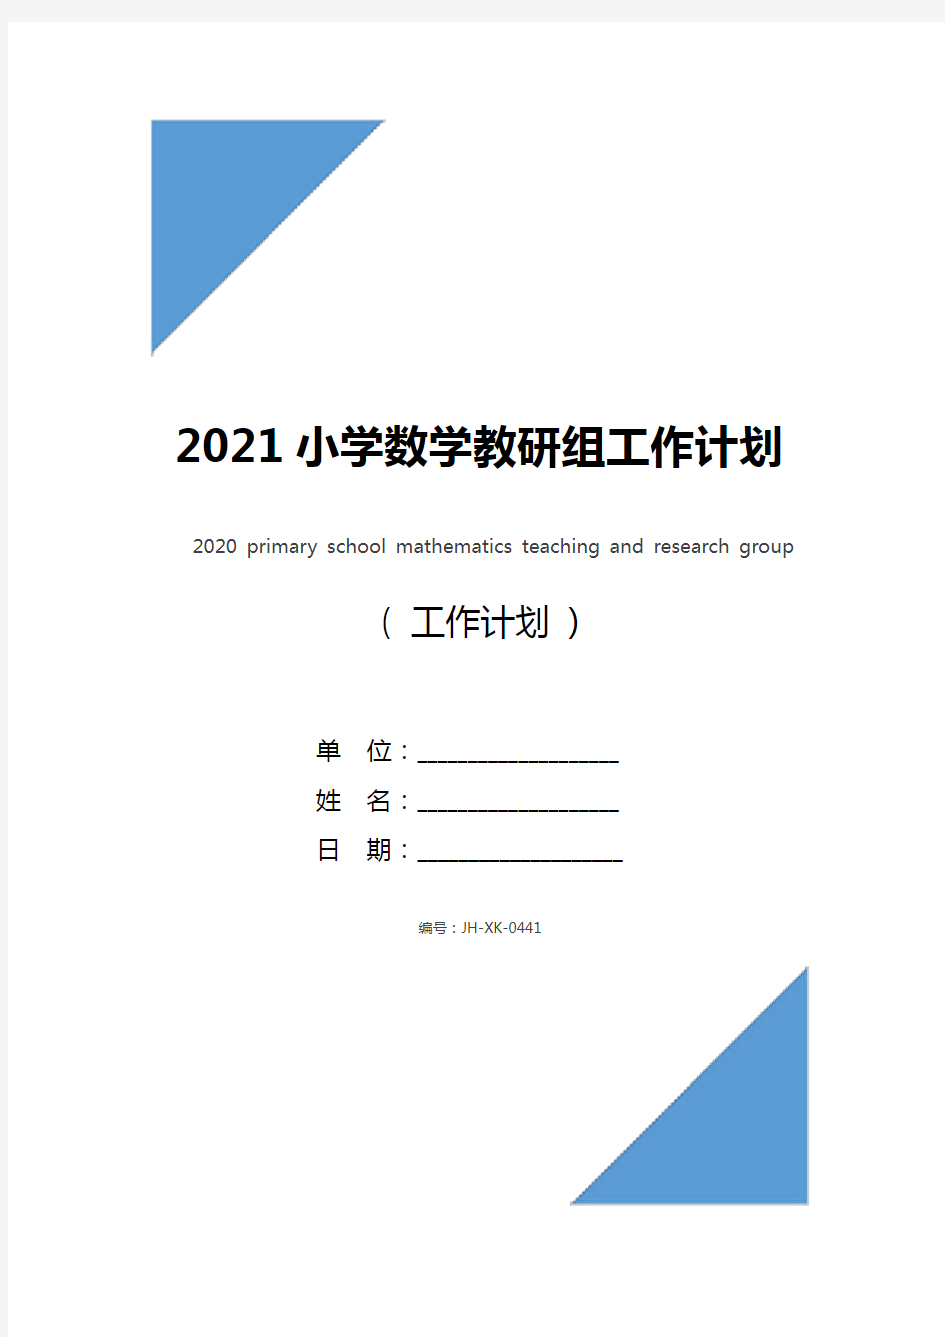 2021小学数学教研组工作计划(最新版)